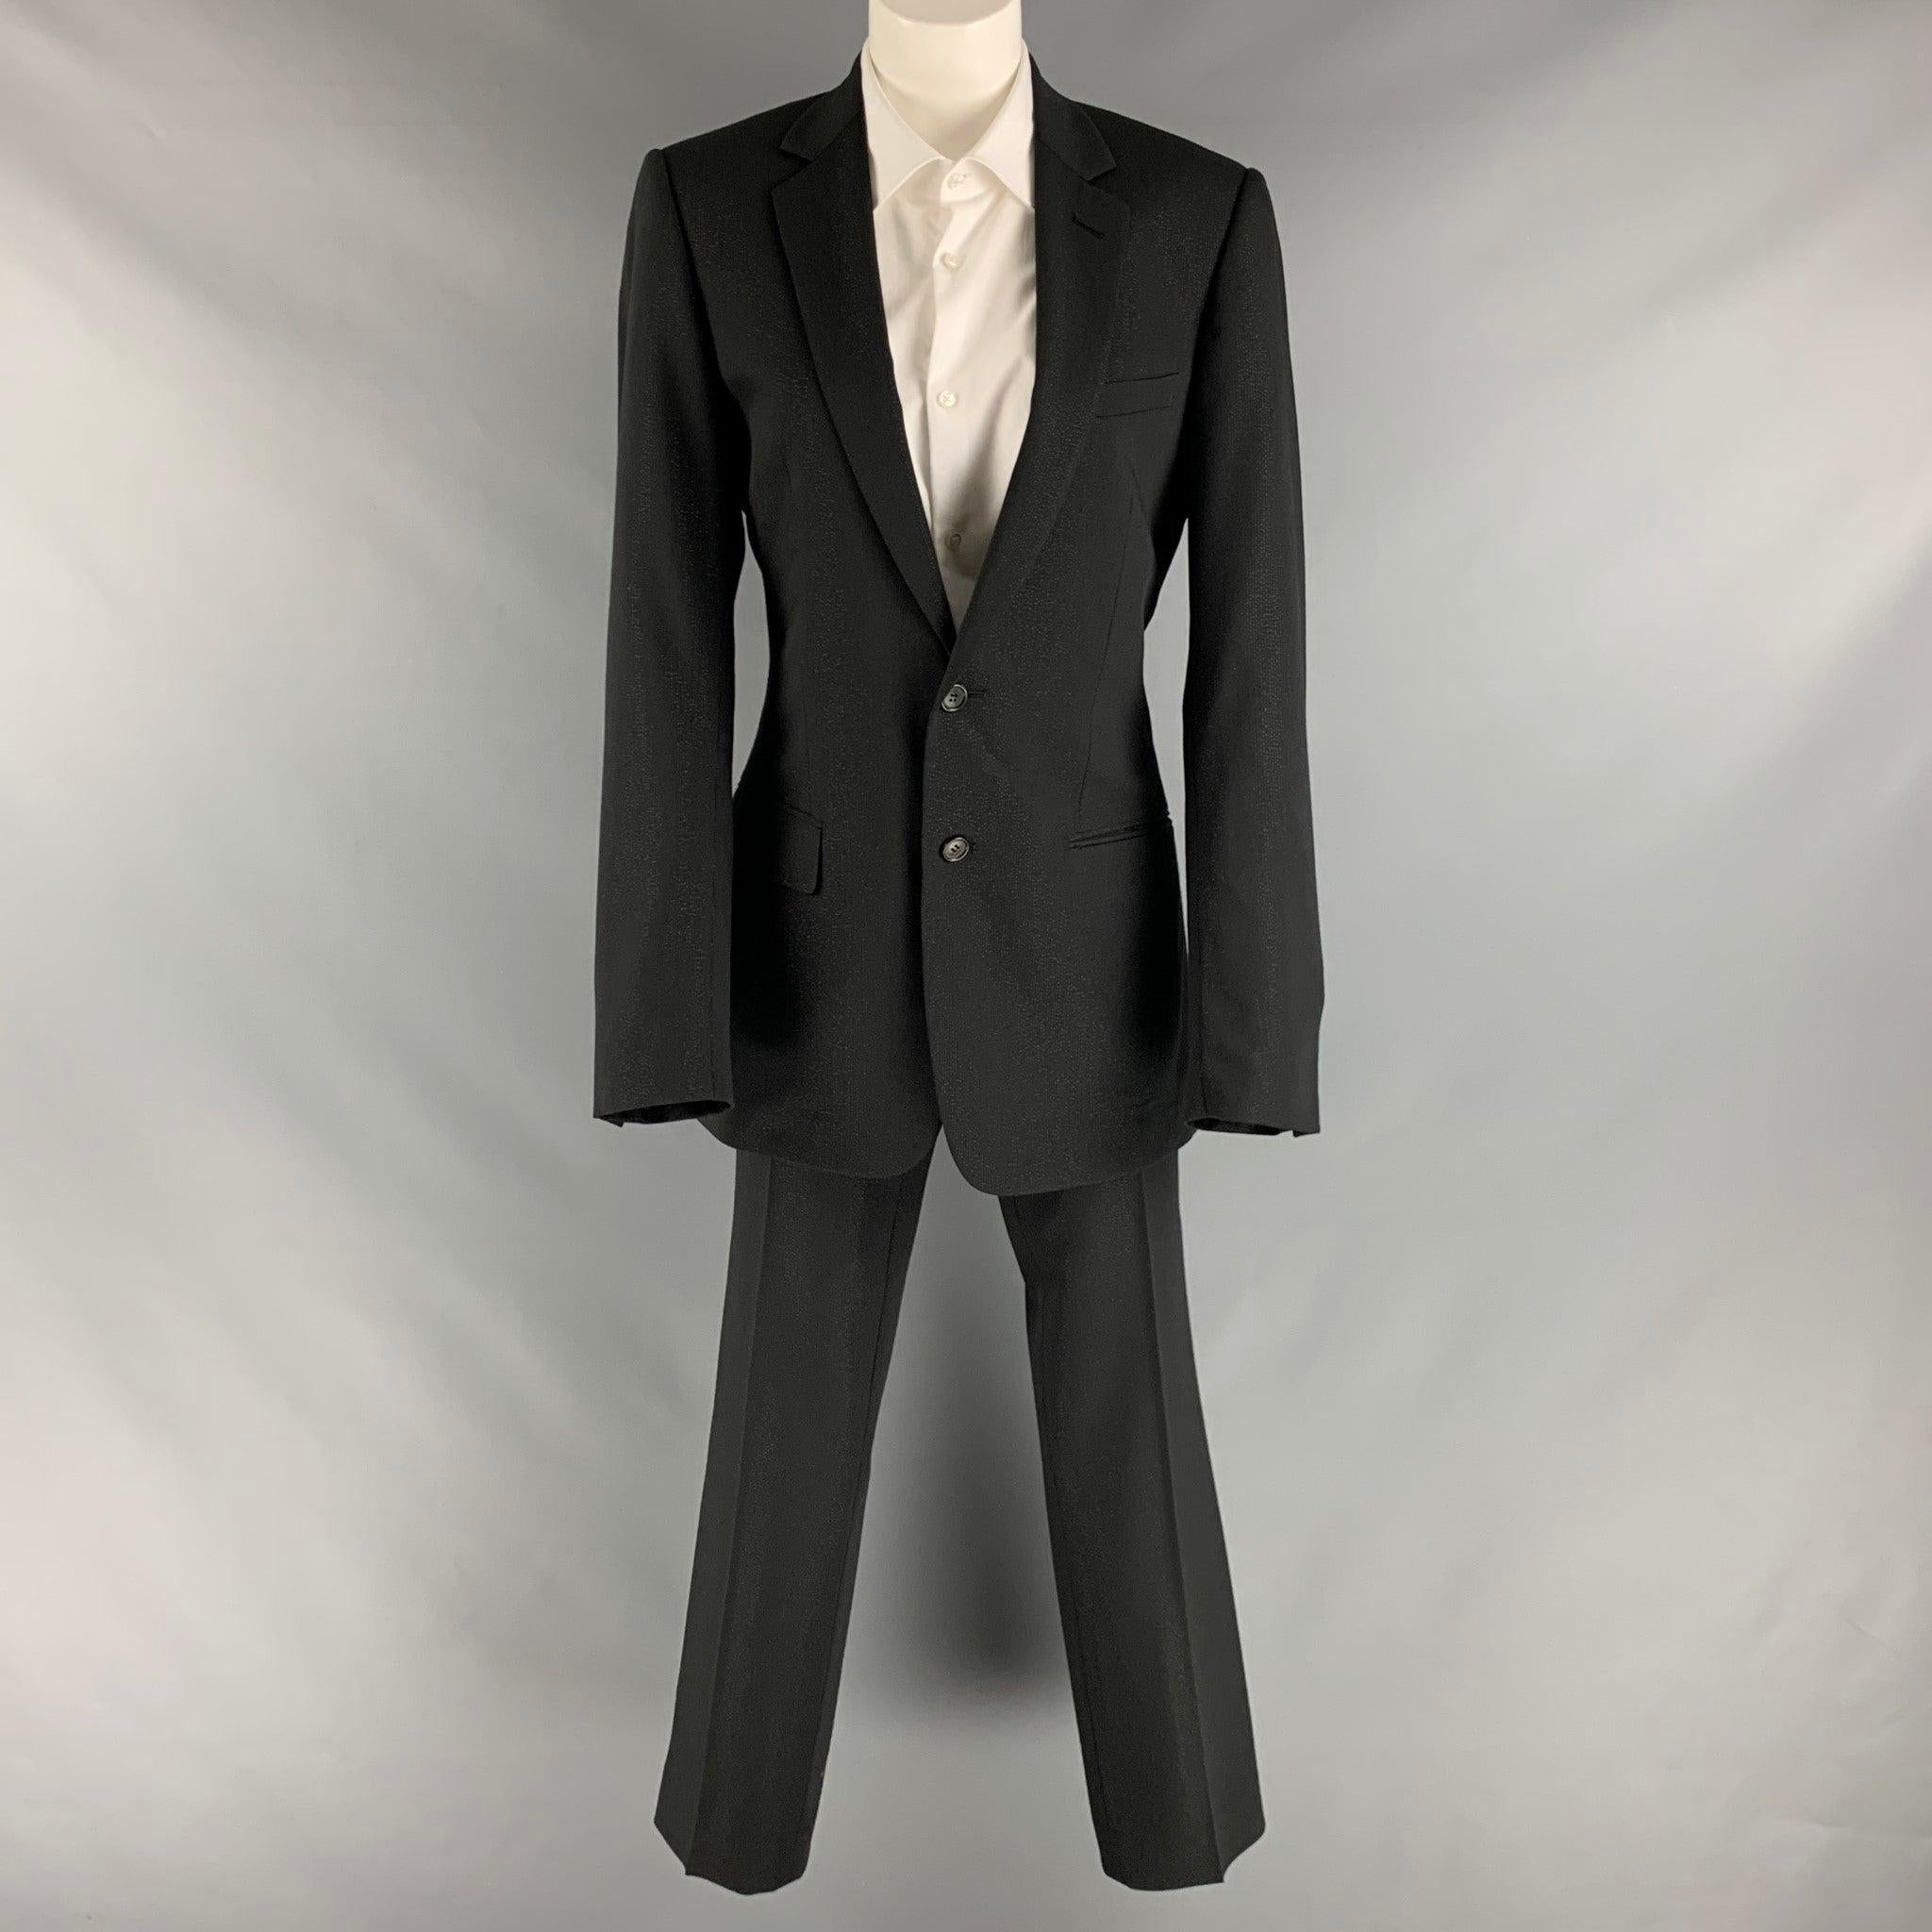 CHRISTIAN DIOR Anzug kommt in einem schwarzen Polyester schimmernde gewebte Material mit einem vollen Futter und umfasst eine einreihige, Doppel-Knopf-Sport-Mantel mit einer Kerbe Revers und passende flache Vorderseite Hose.Excellent Pre-Owned